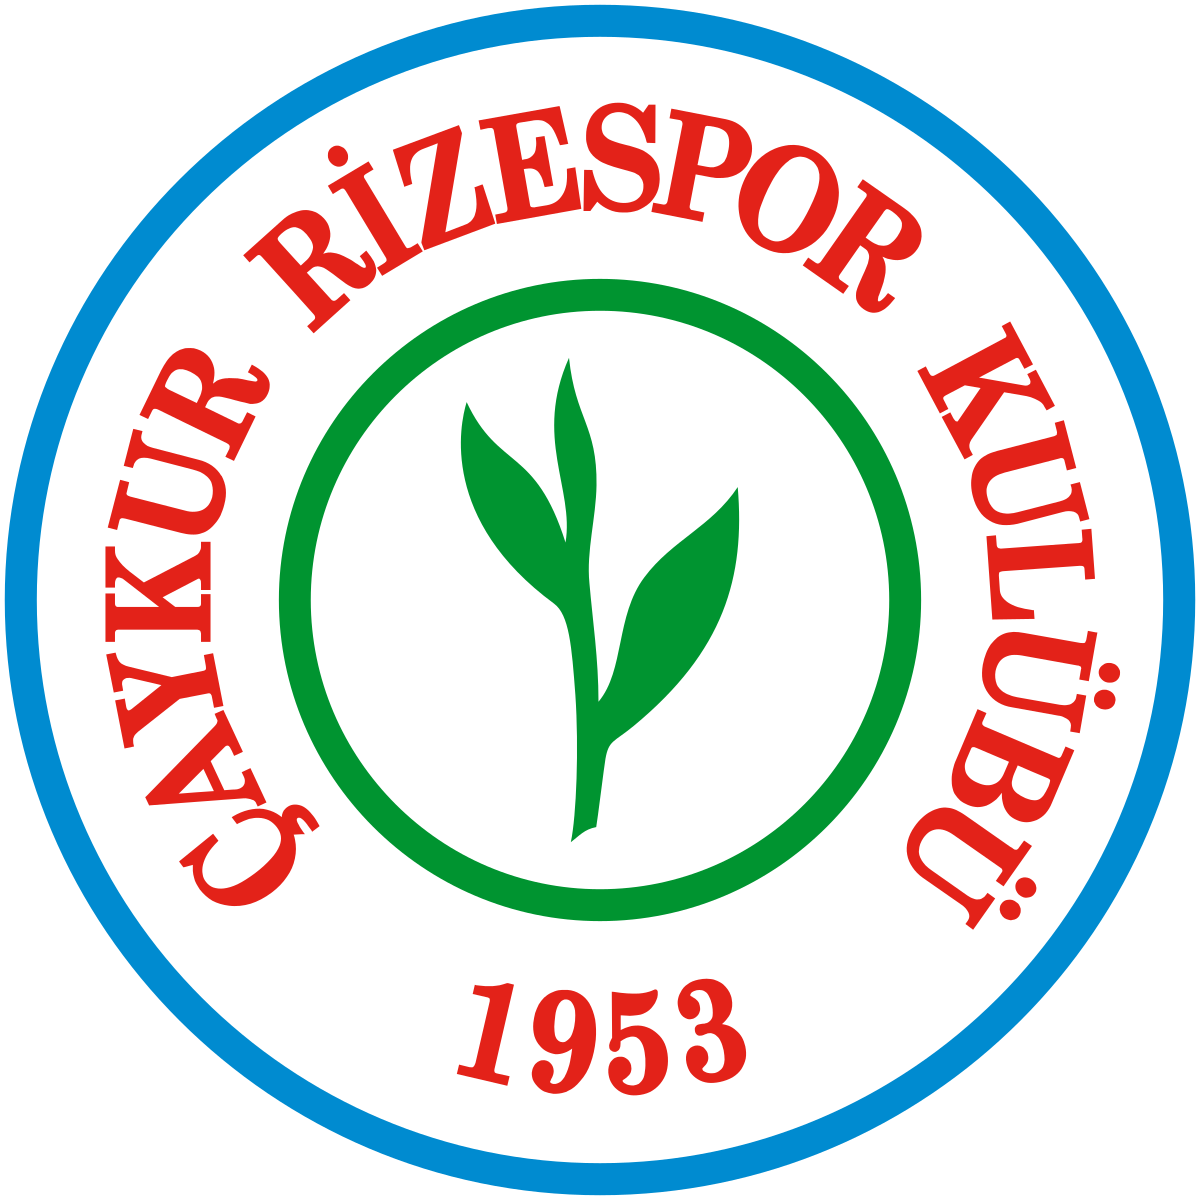 Places Rizespor